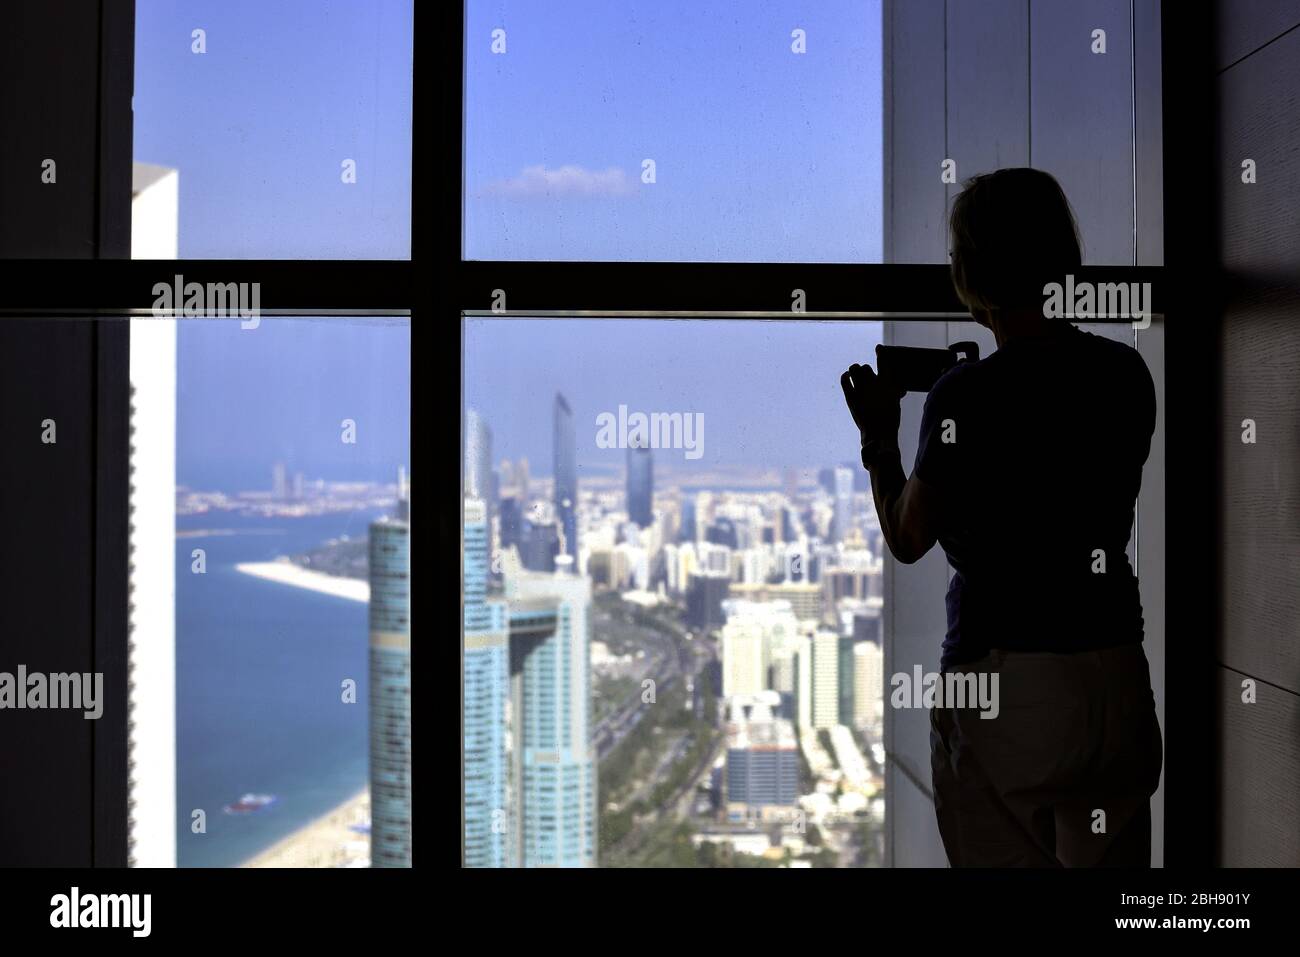 Touristin am Fenster, fotografiert die Aussicht auf Abu Dhabi mit dem Smartphone, Silhouette Stock Photo